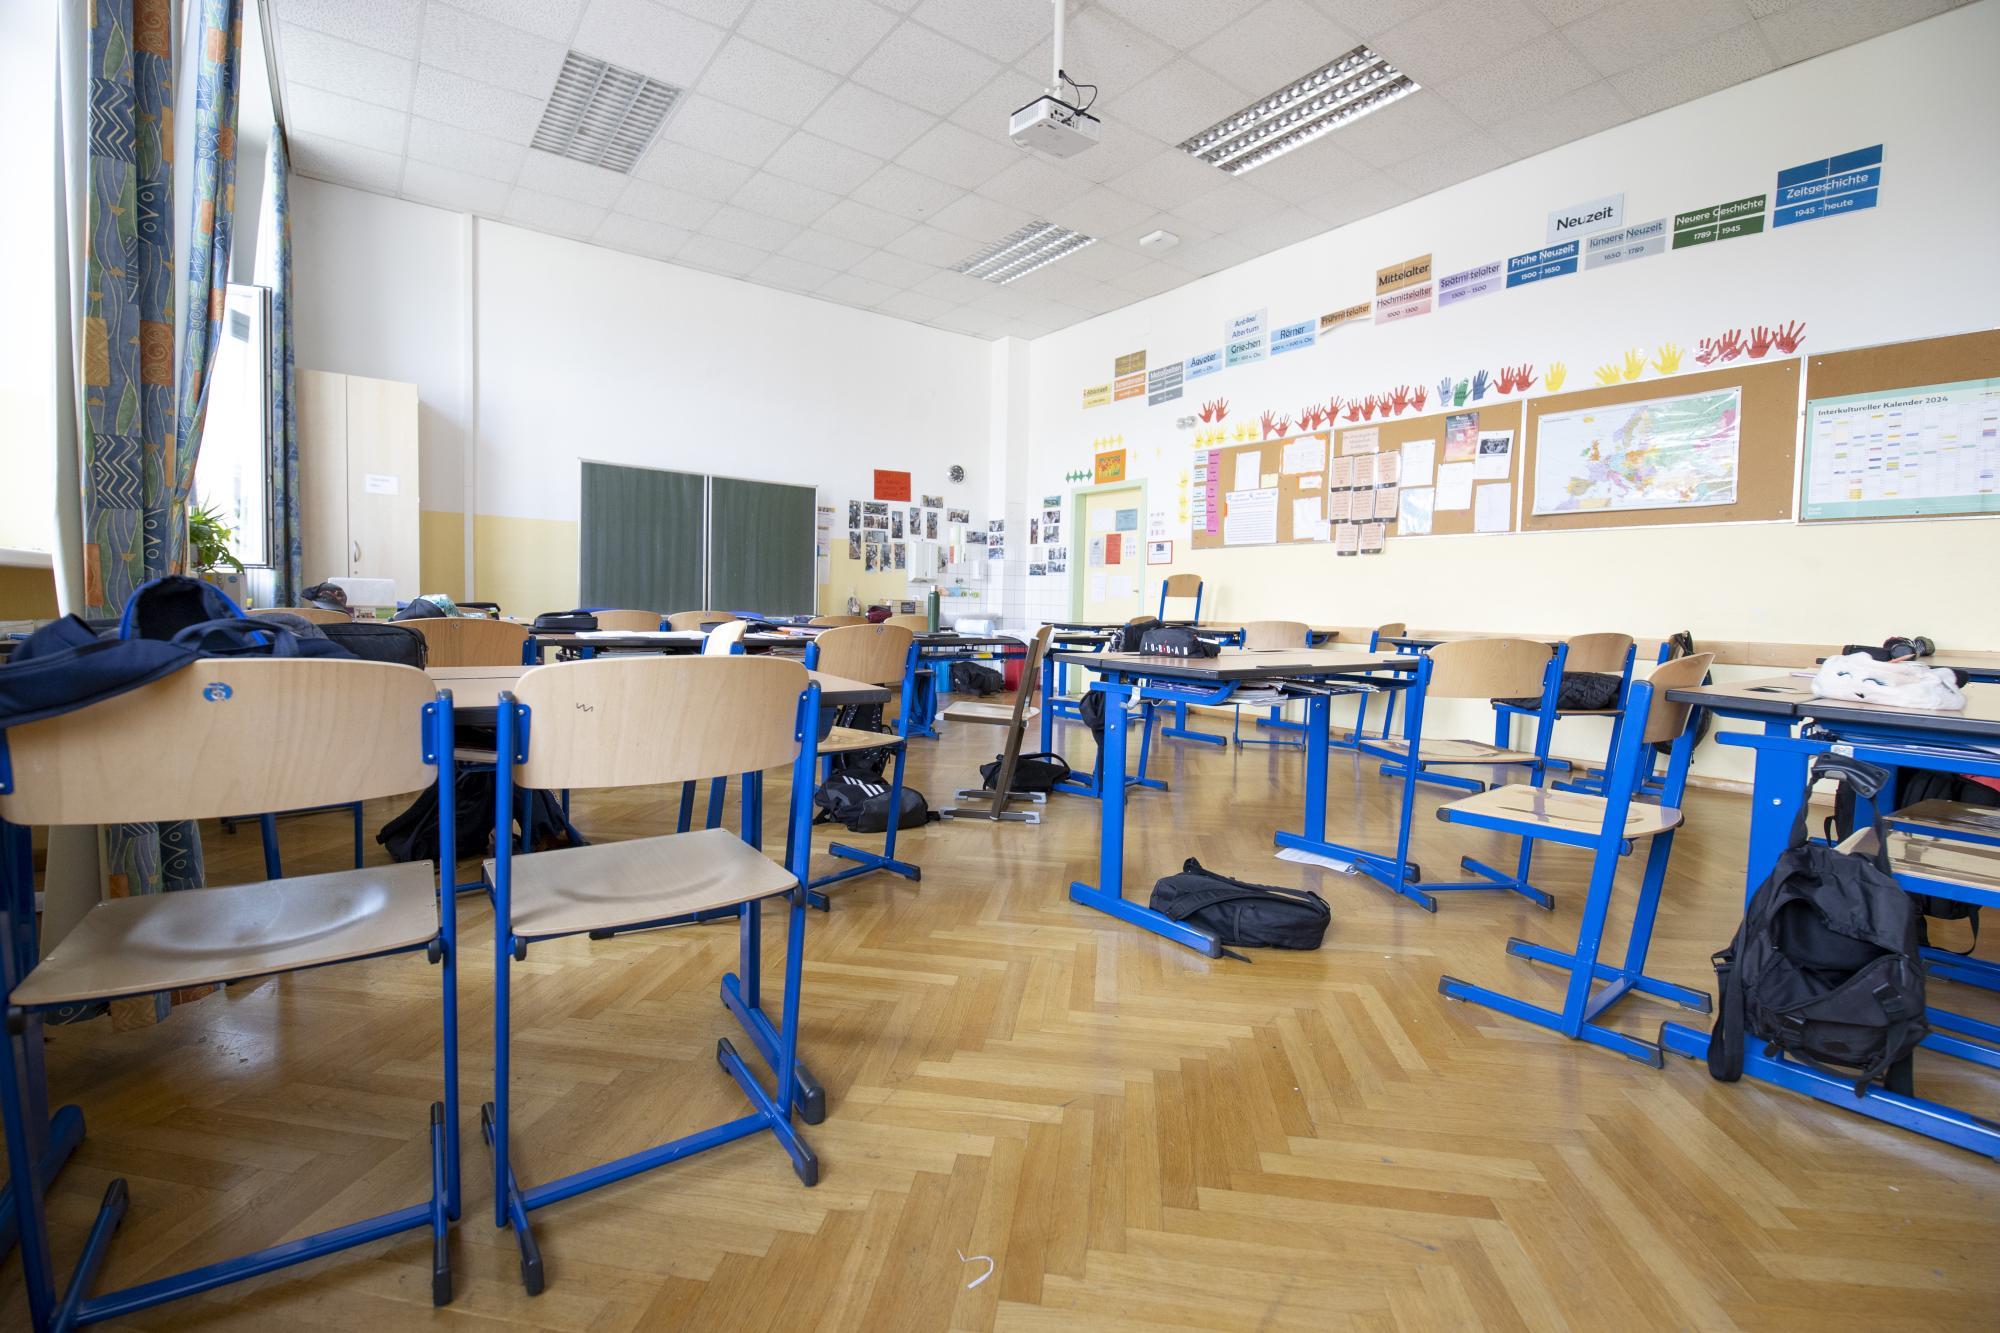 Decke in obersteirischer Schule eingestürzt: Keine Verletzten